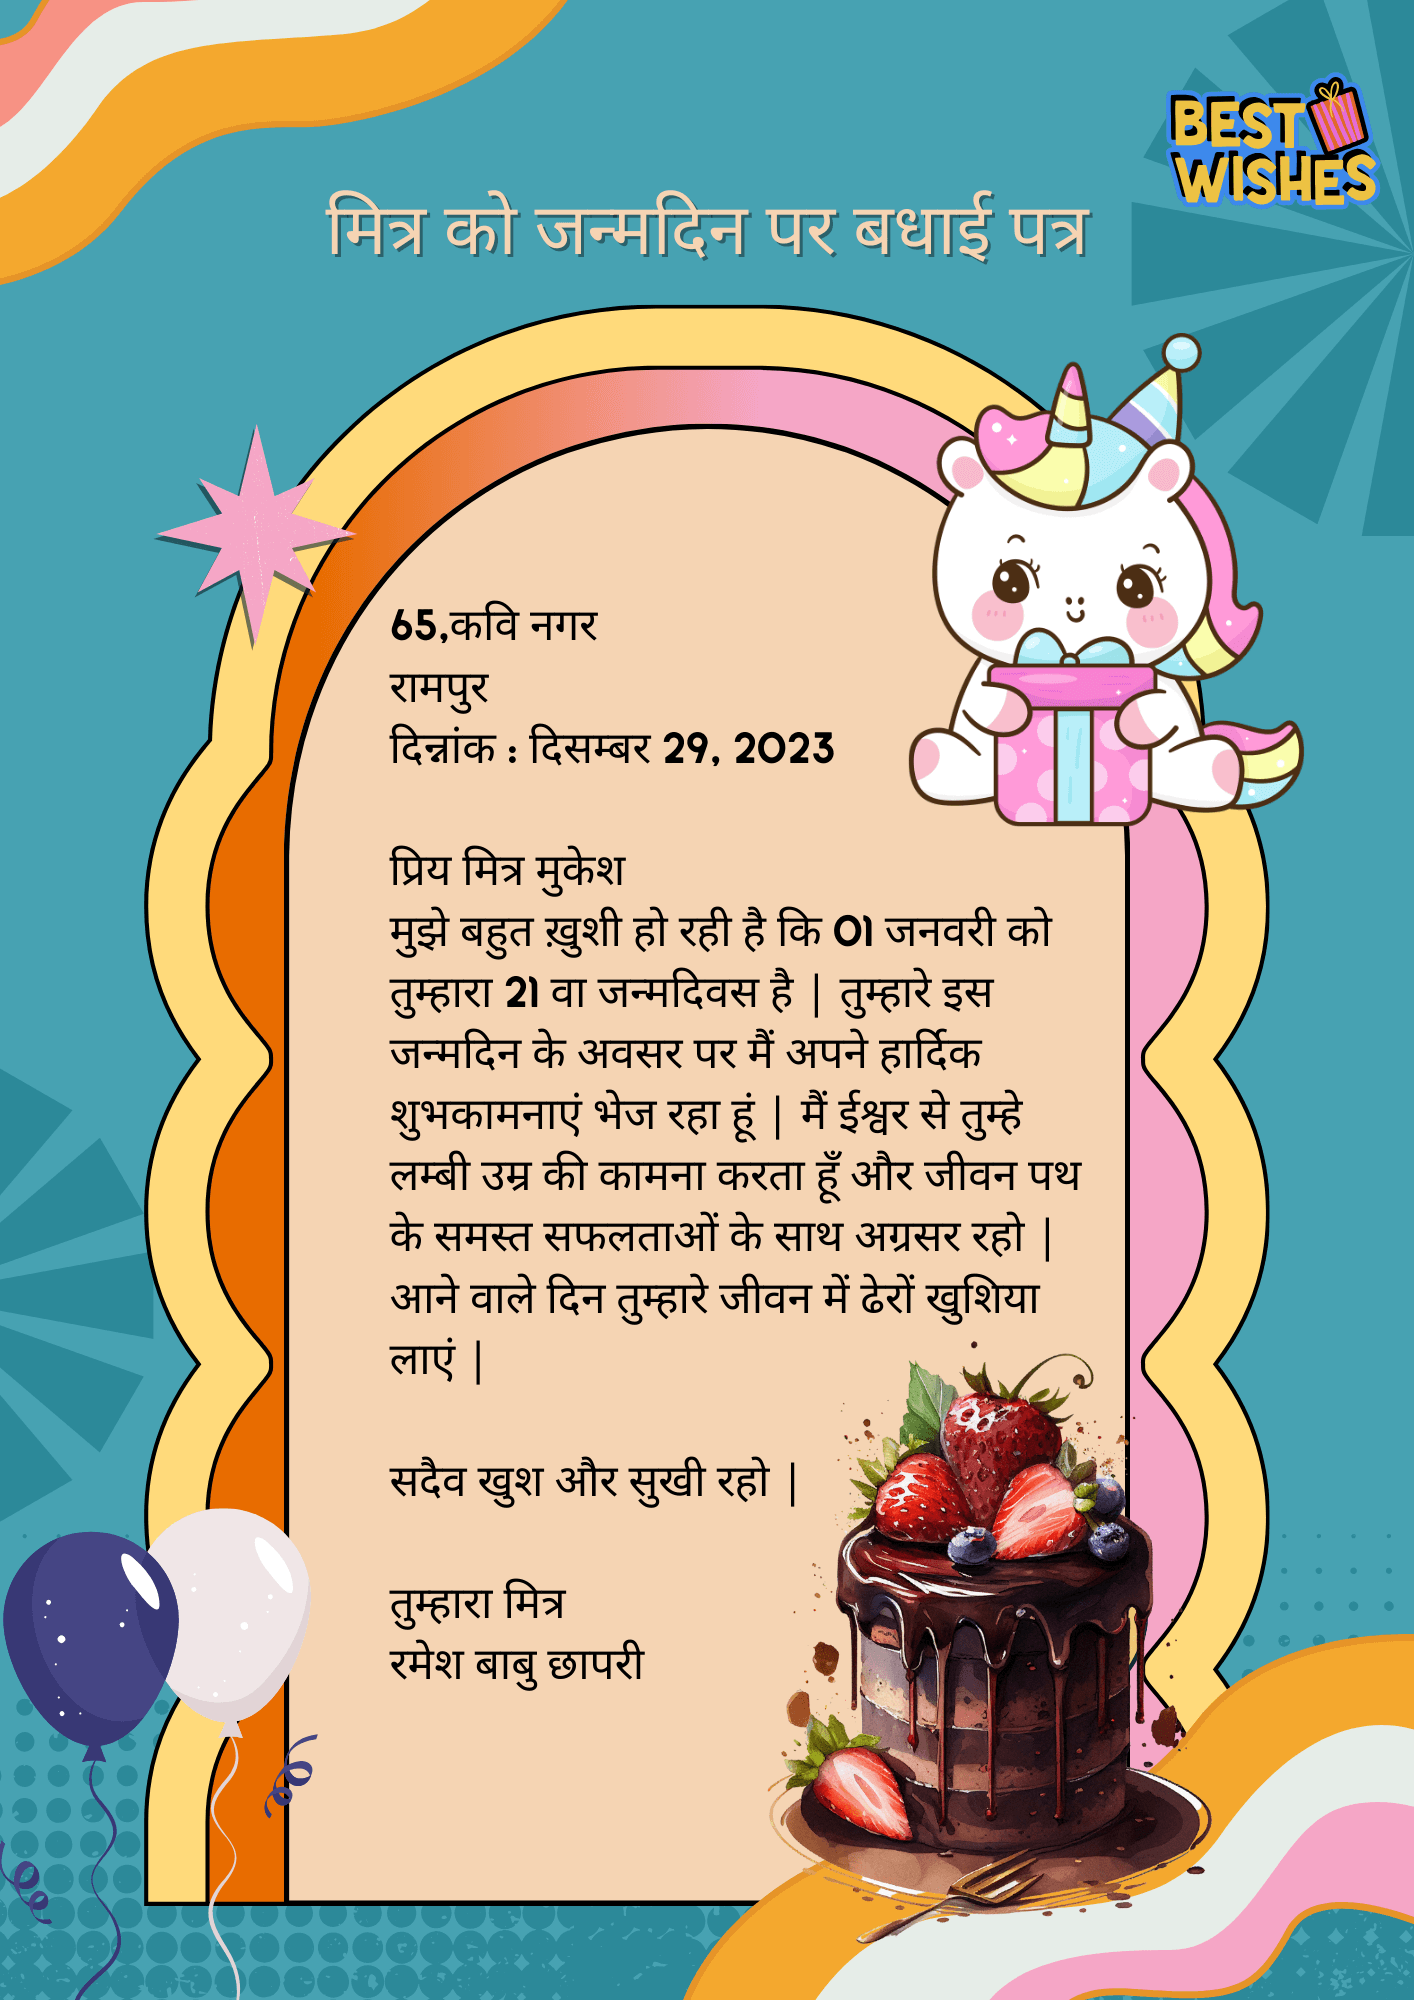 अपने मित्र को जन्मदिन पर बधाई पत्र लिखिए Mitra ko Janamdin par Badhai Patra